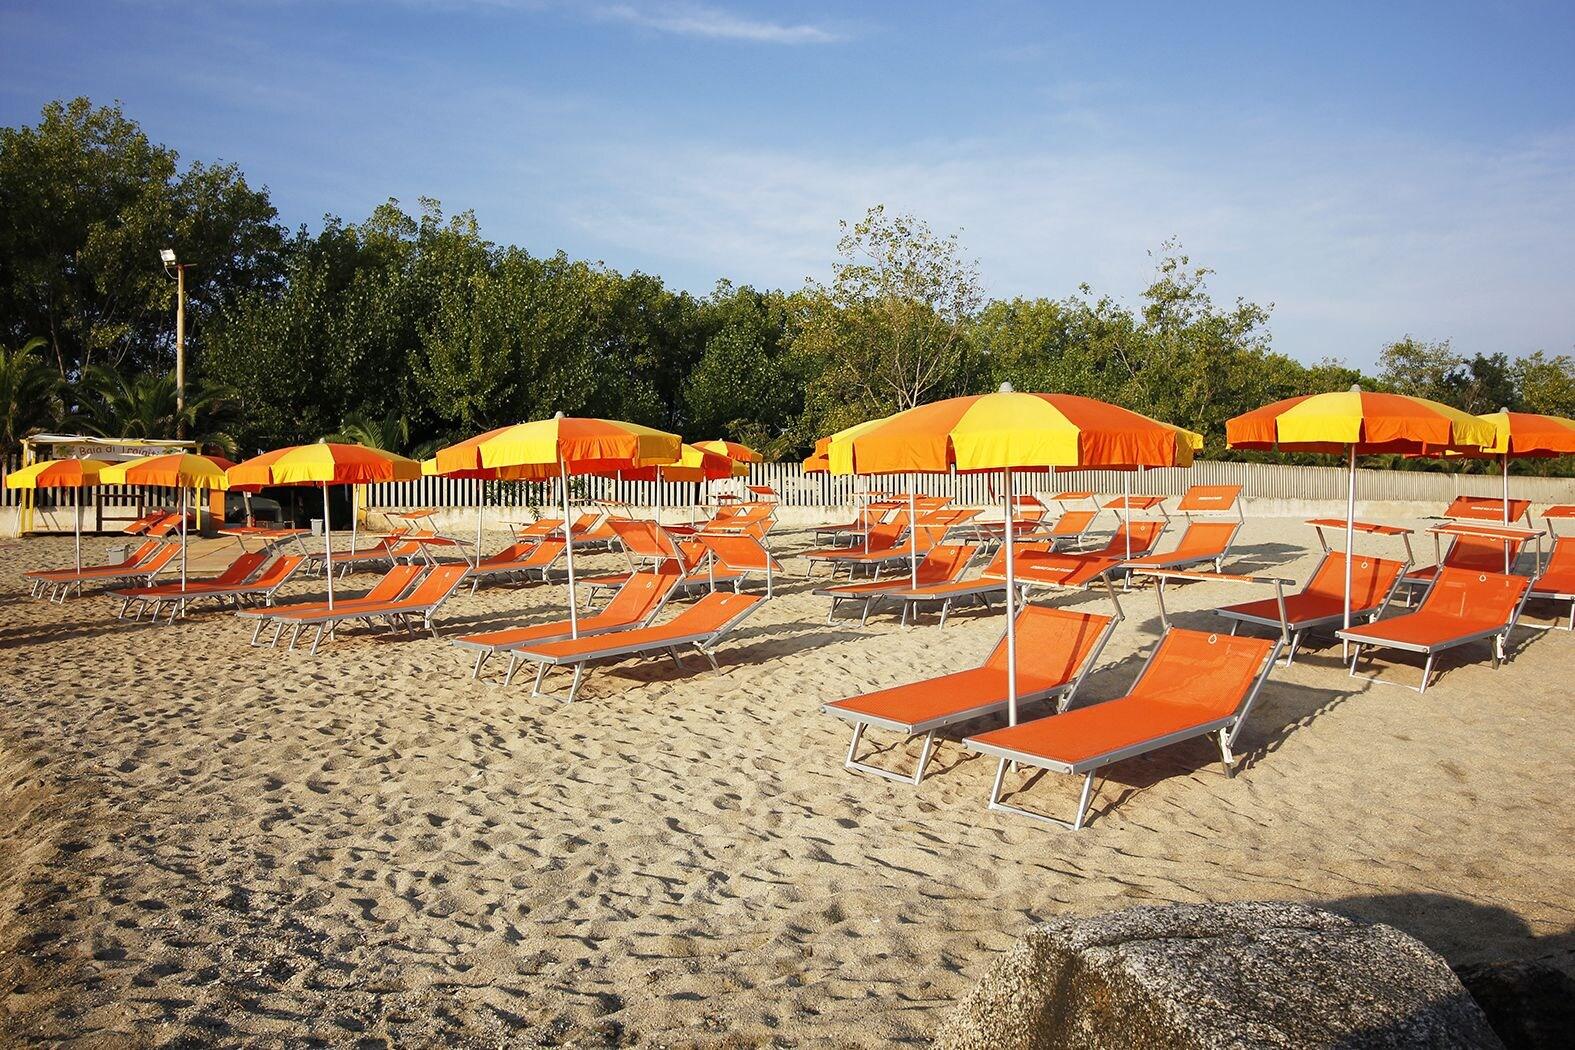 Spiaggia di Trainiti'in fotoğrafı doğal alan içinde bulunmaktadır